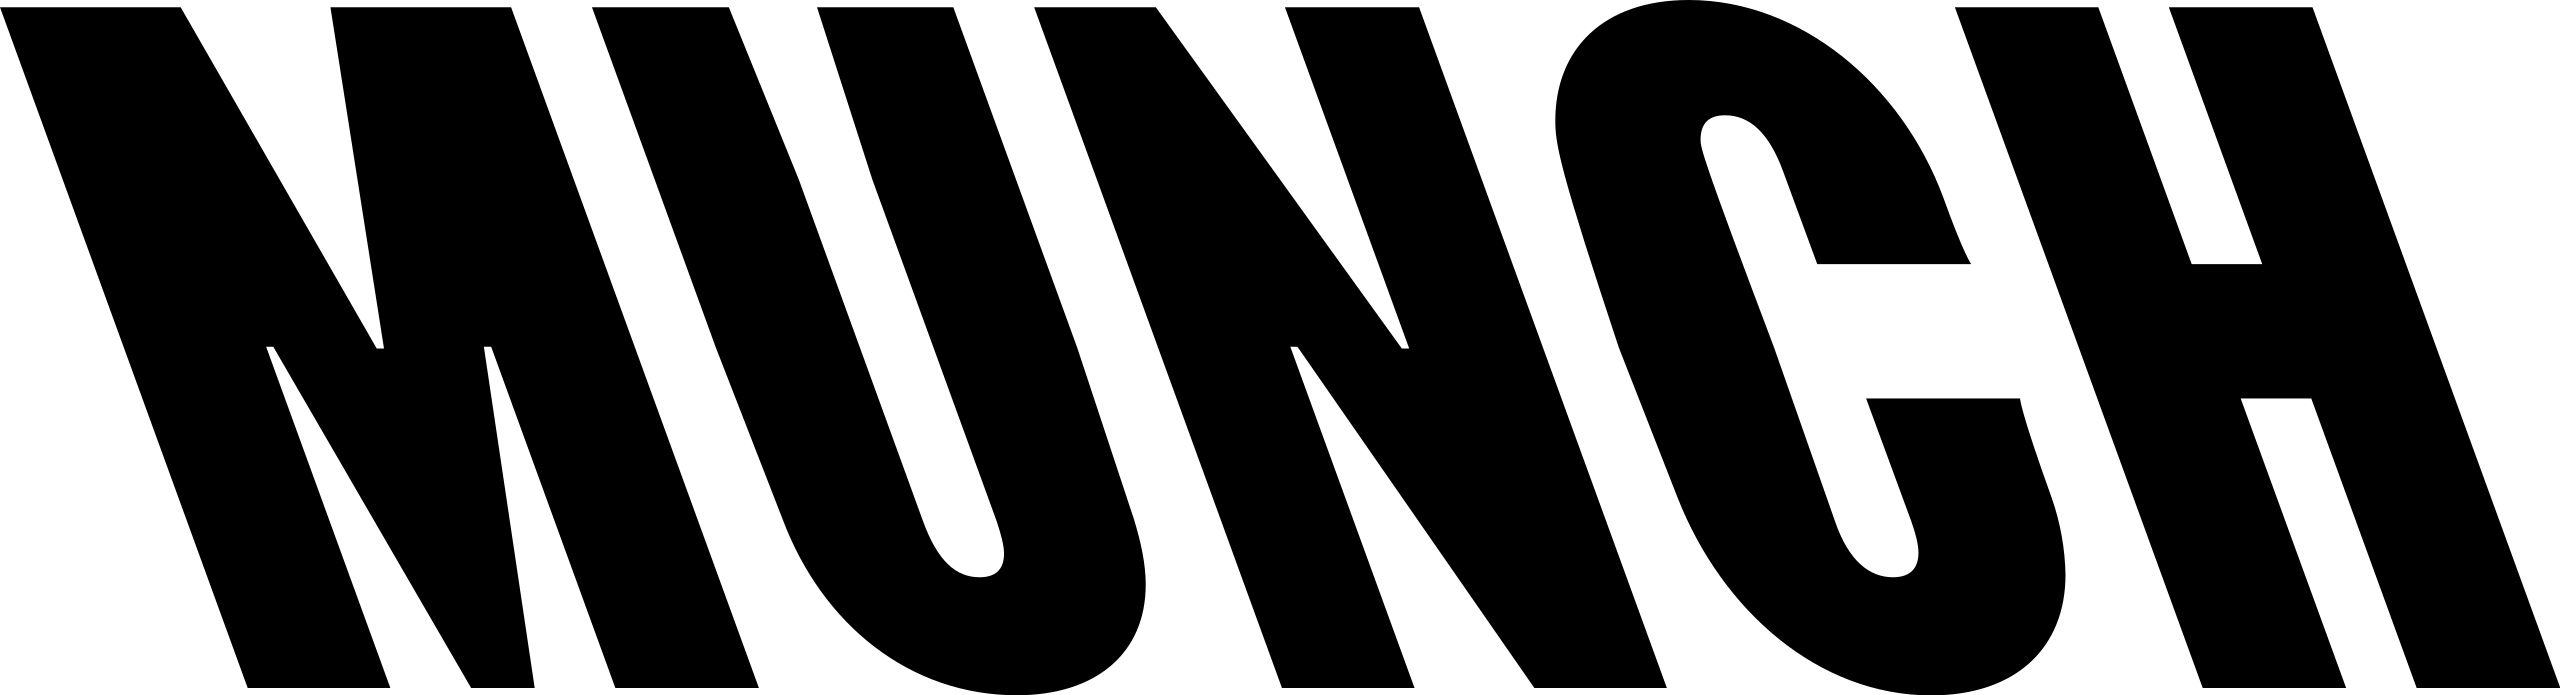 Munch_(logo).svg